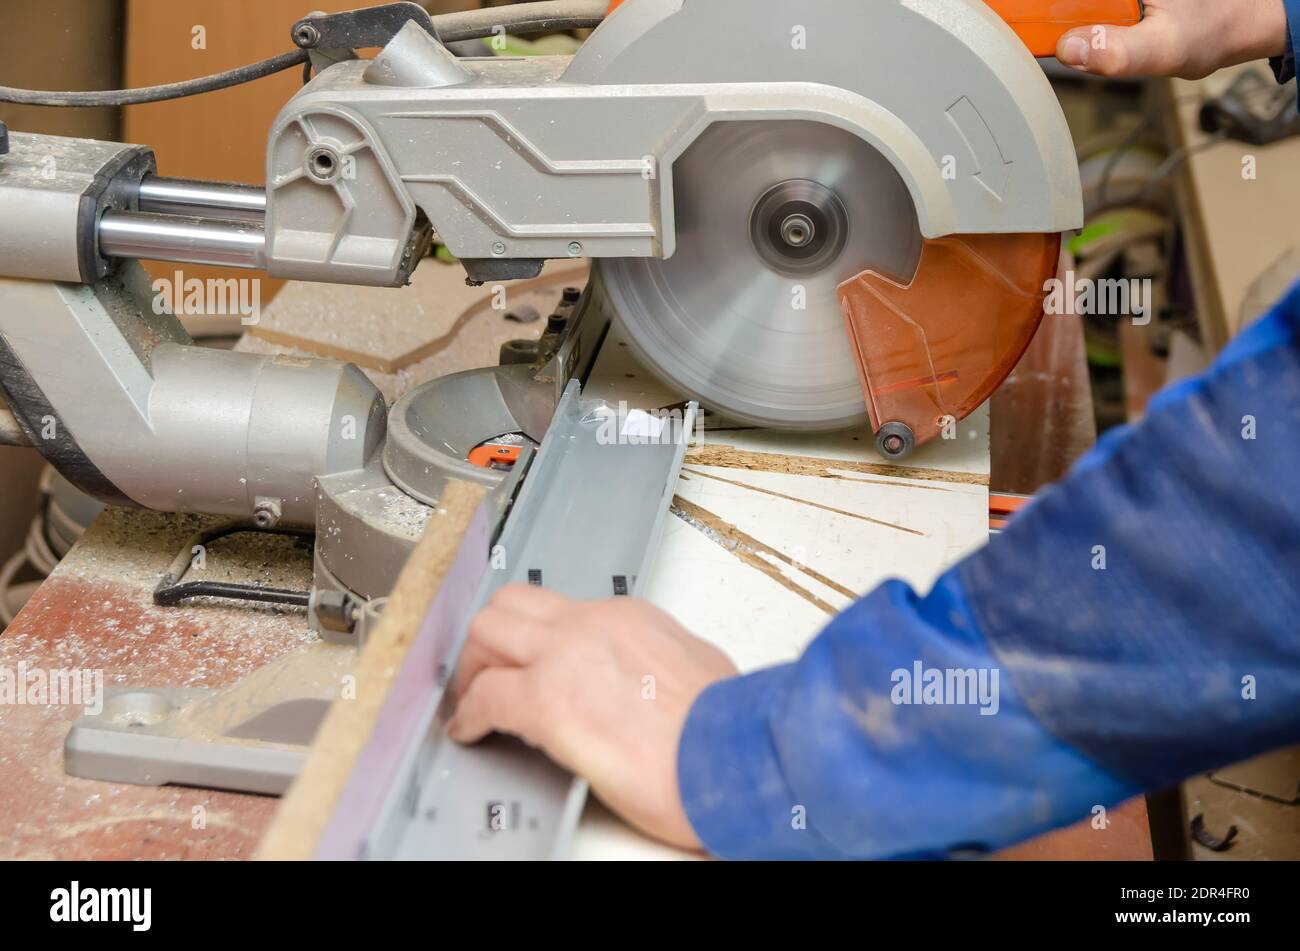 El trabajador corta parte de la estructura metálica con una sierra circular  para cortar aluminio. Aserrado de metal. Máquina de corte abrasivo  Fotografía de stock - Alamy